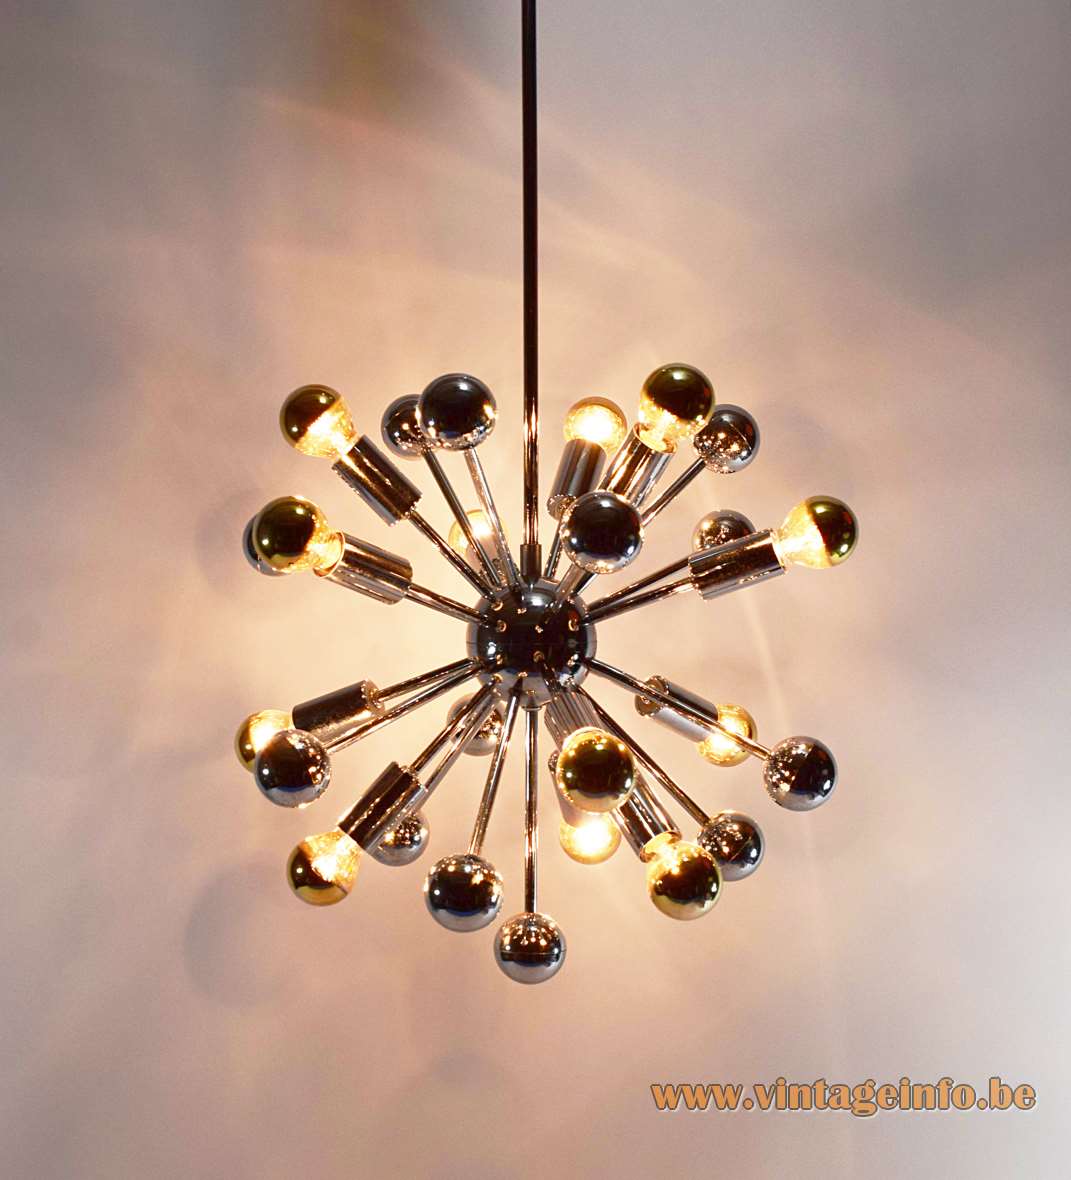 1960s chrome Sputnik chandelier long rods globe & balls 12 silver tipped bulbs Boulanger Belgium 1970s